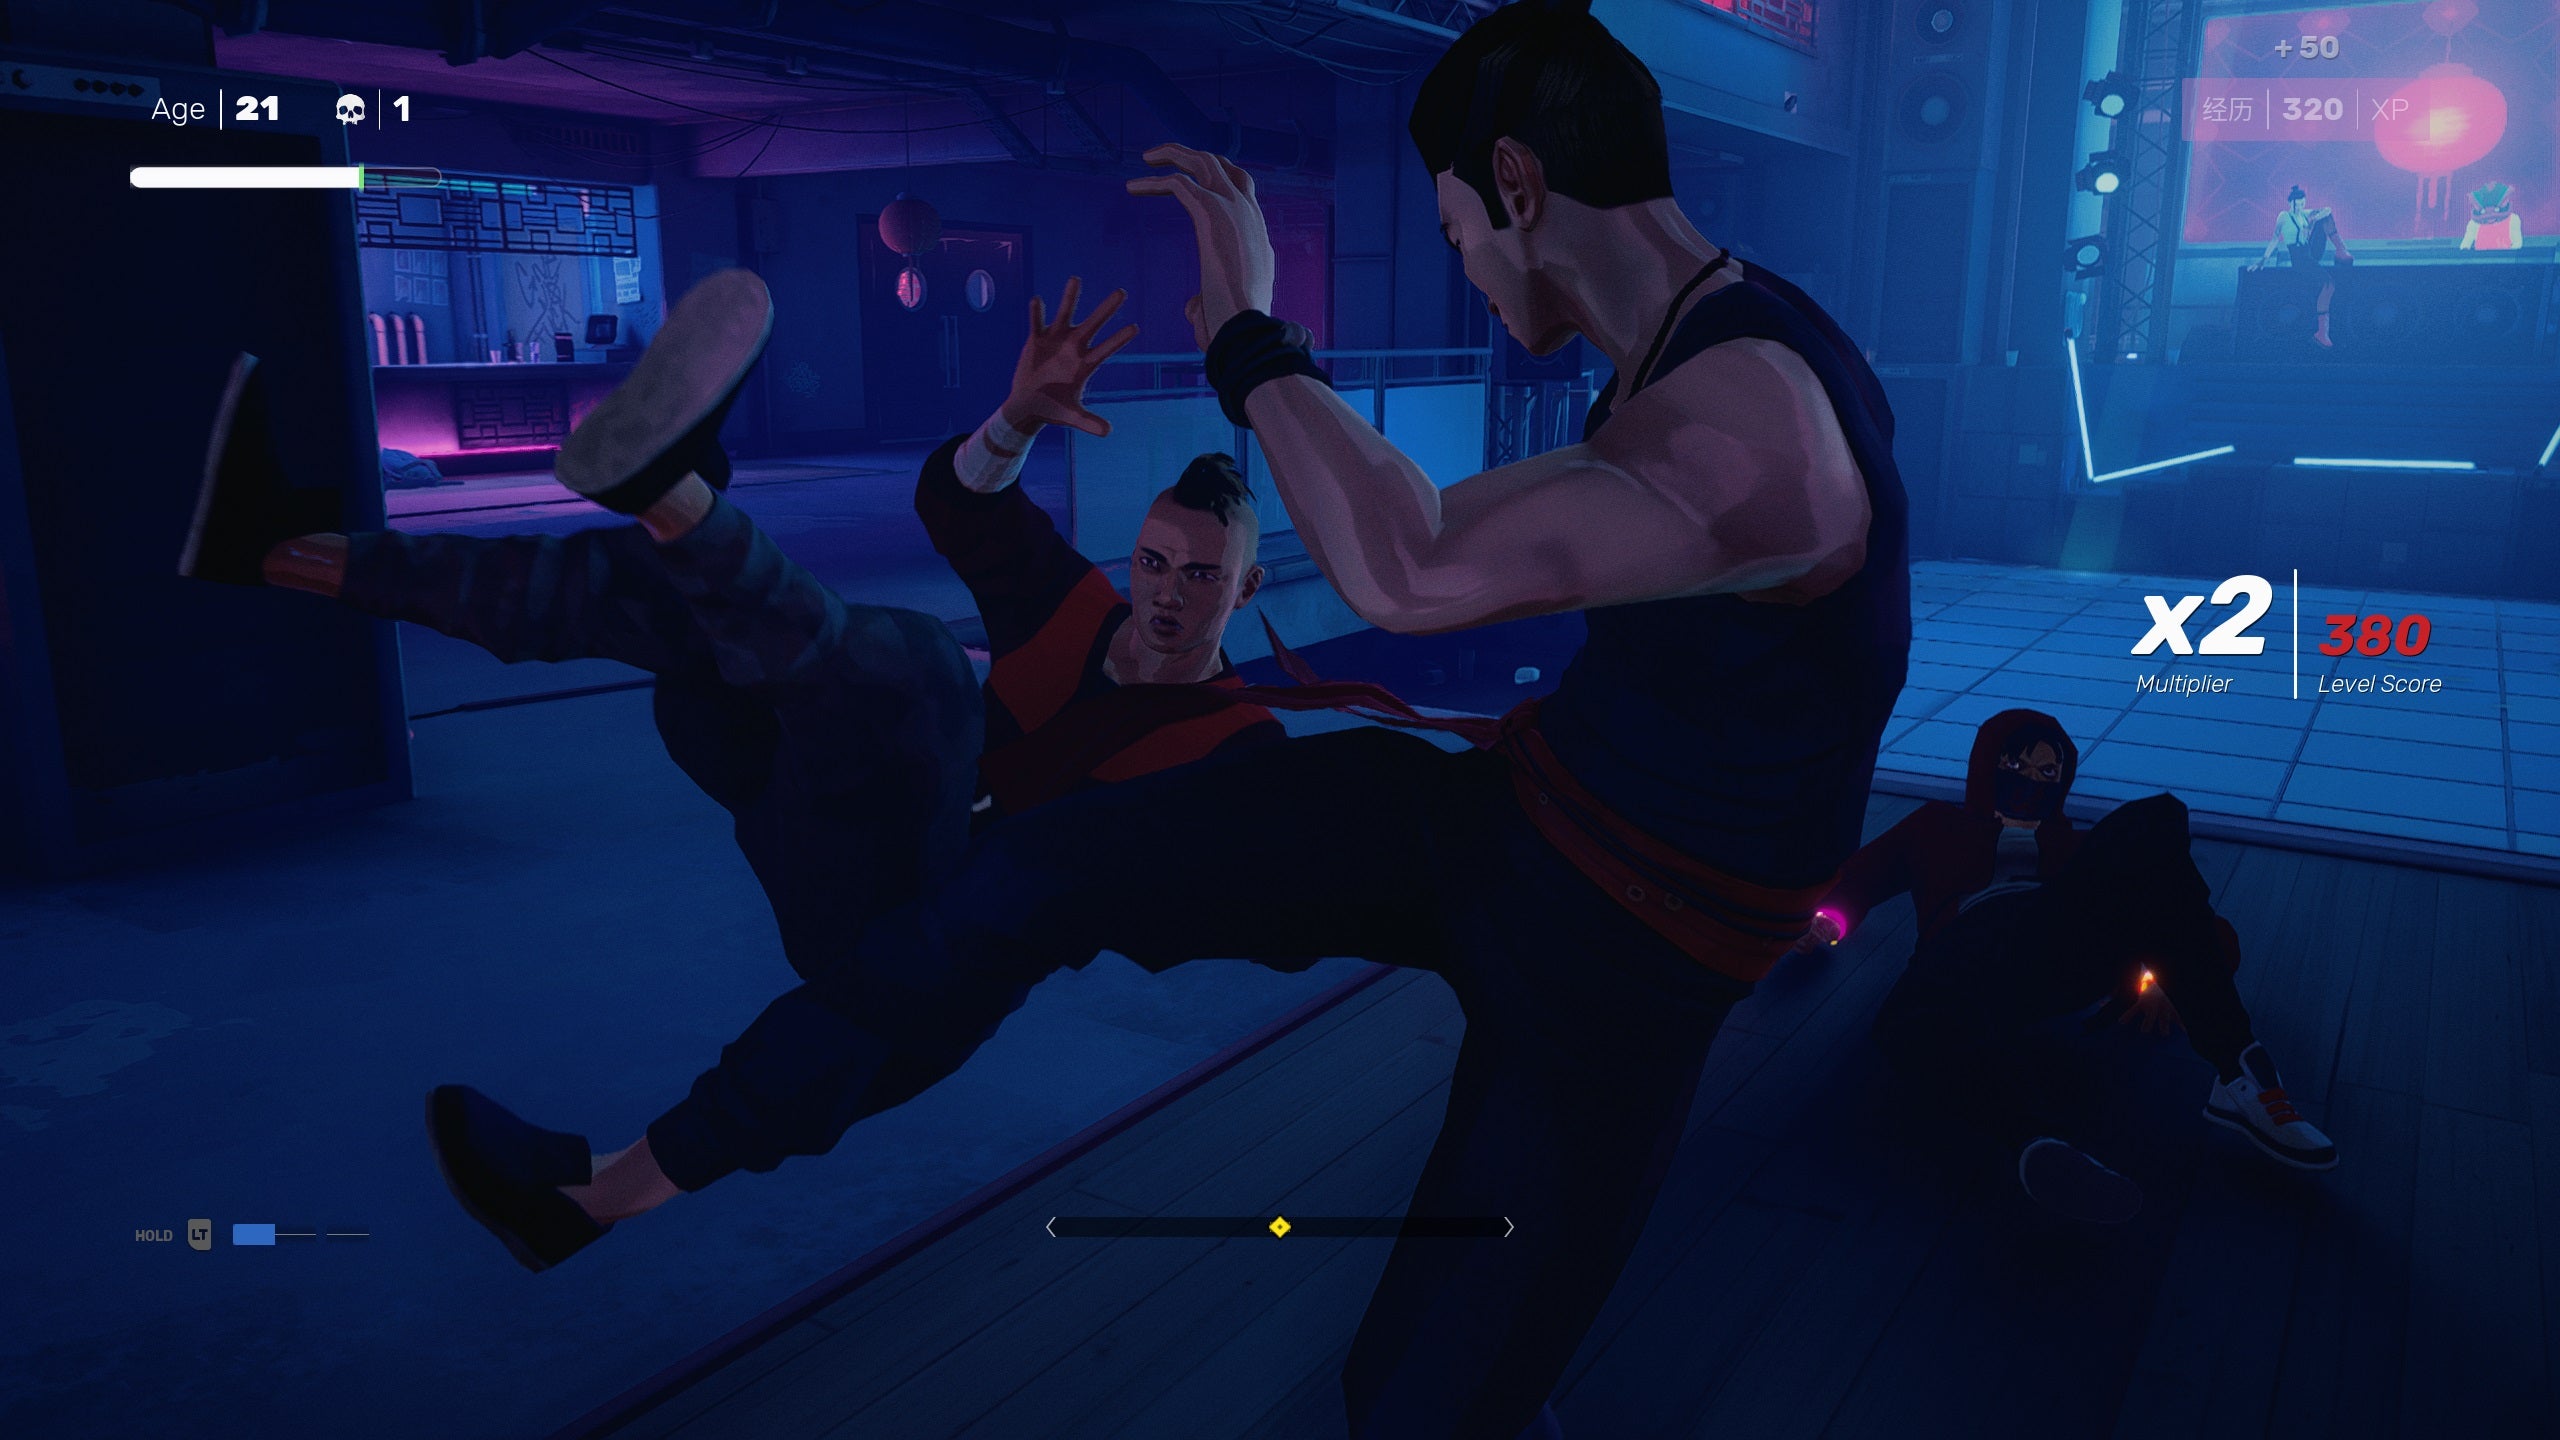 O protagonista de Sifu tropeça em um inimigo varrendo suas pernas por baixo dele.  Está em uma sala escura com luz de fundo azul e parece muito legal